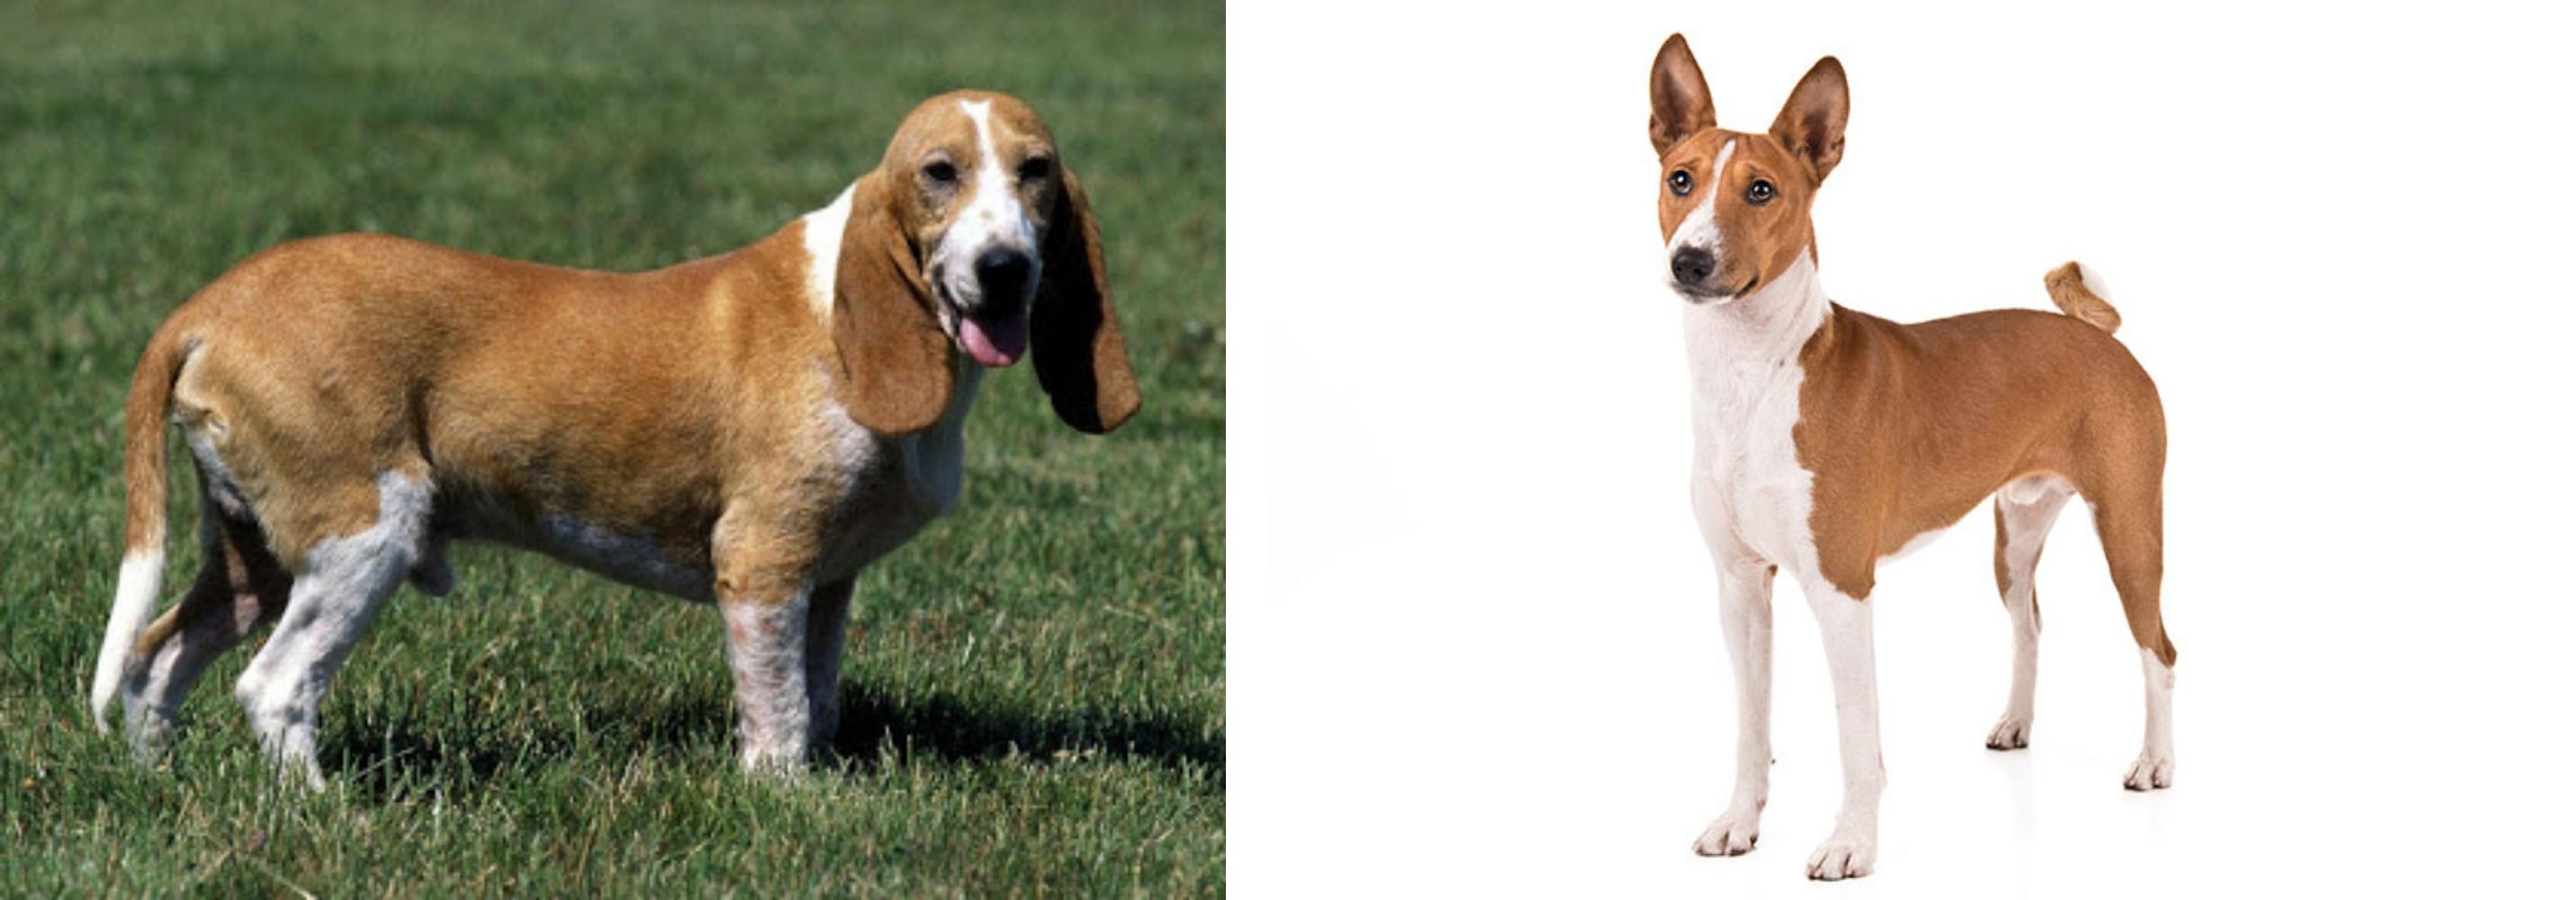 Schweizer Niederlaufhund Vs Basenji Breed Comparison